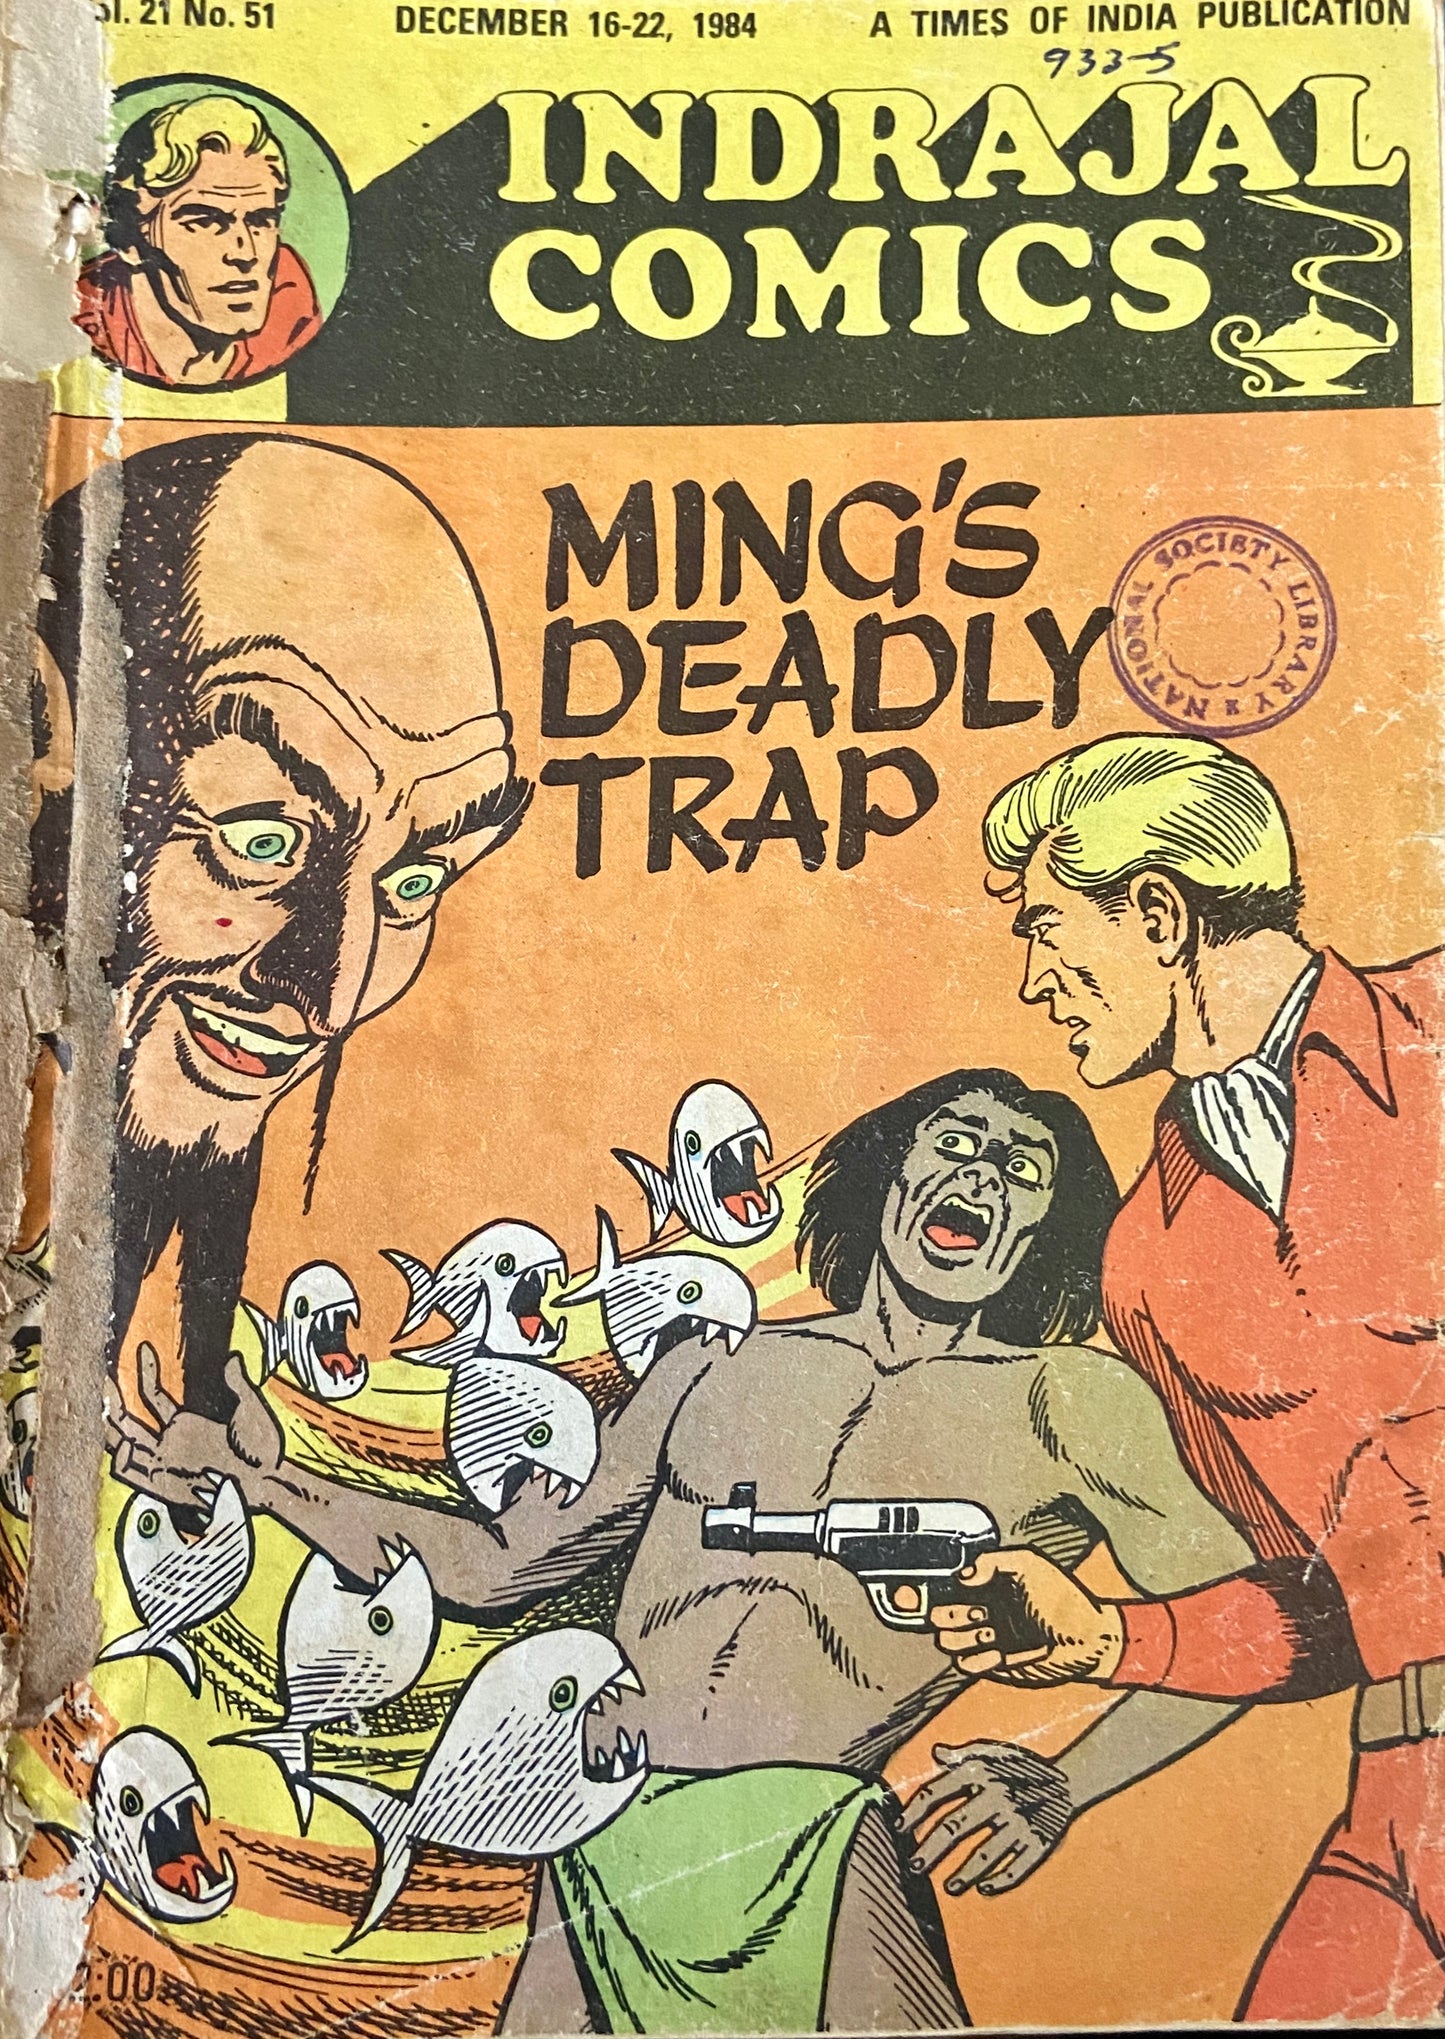 Ming's Deadly Trap Vol 21 No 51 Indrajal Comics